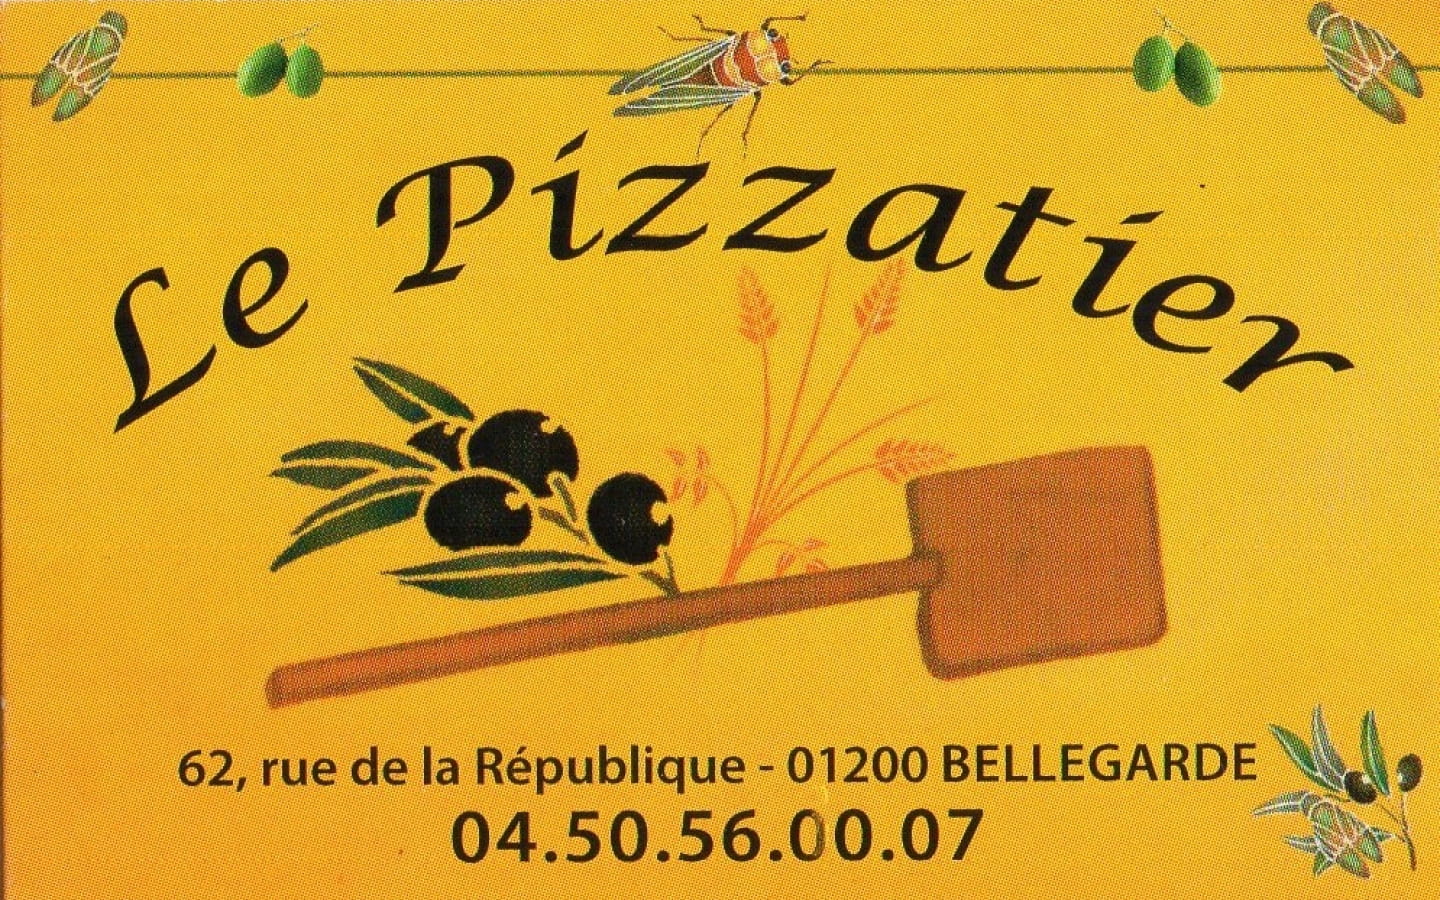 Le Pizzatier